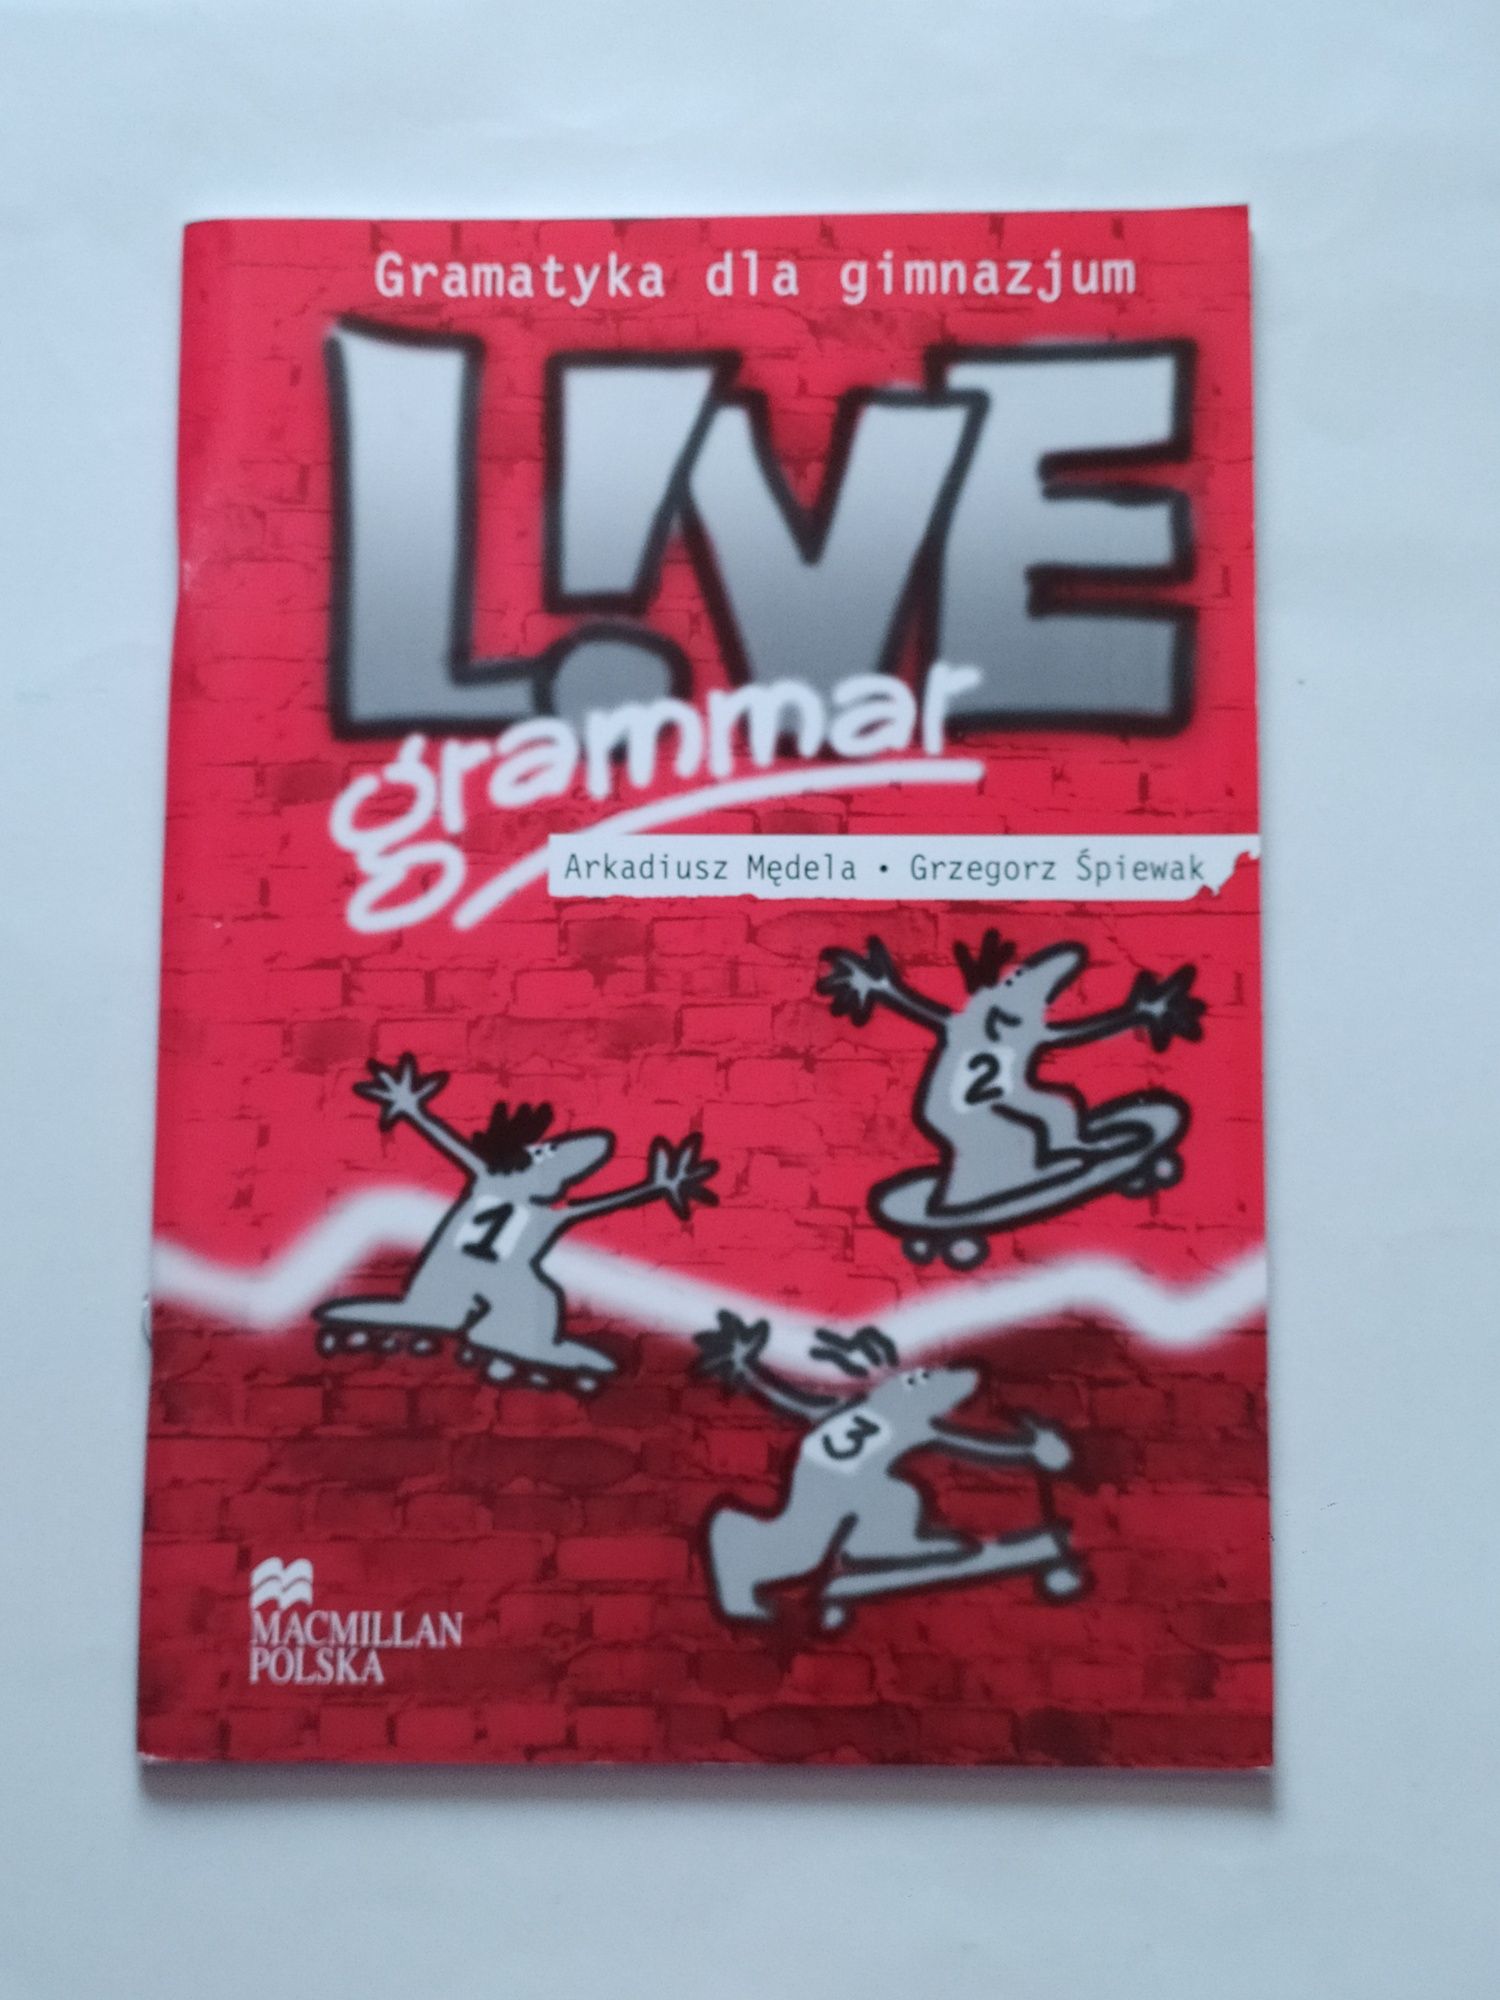 Nowa LIVE GRAMMAR - Gramatyka dla gimnazjum MACMILLAN Polska